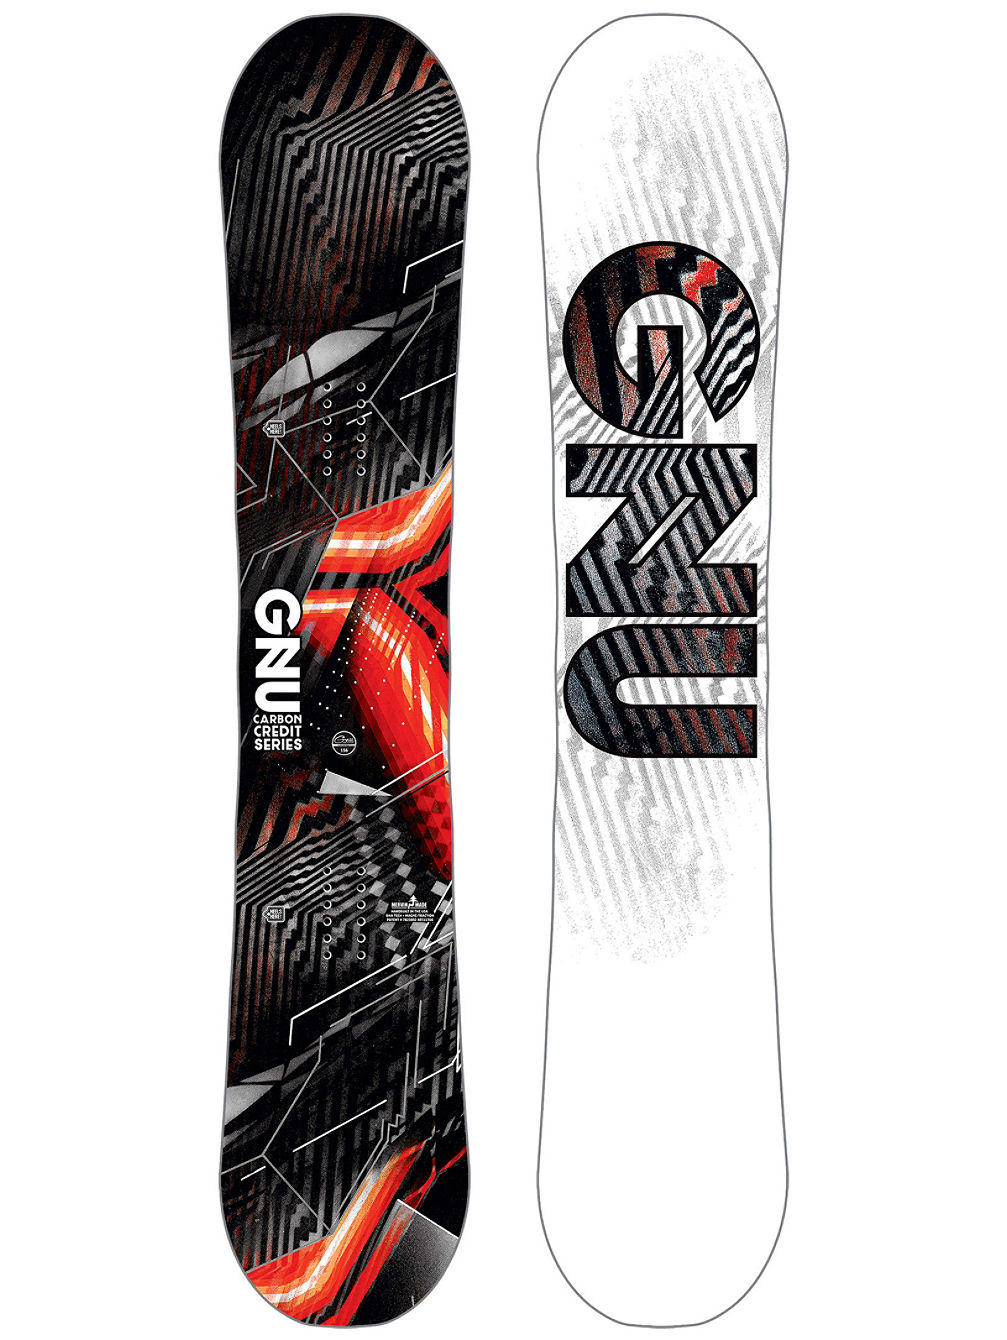 Asym Carbon Credit BTX 159 Snowboard